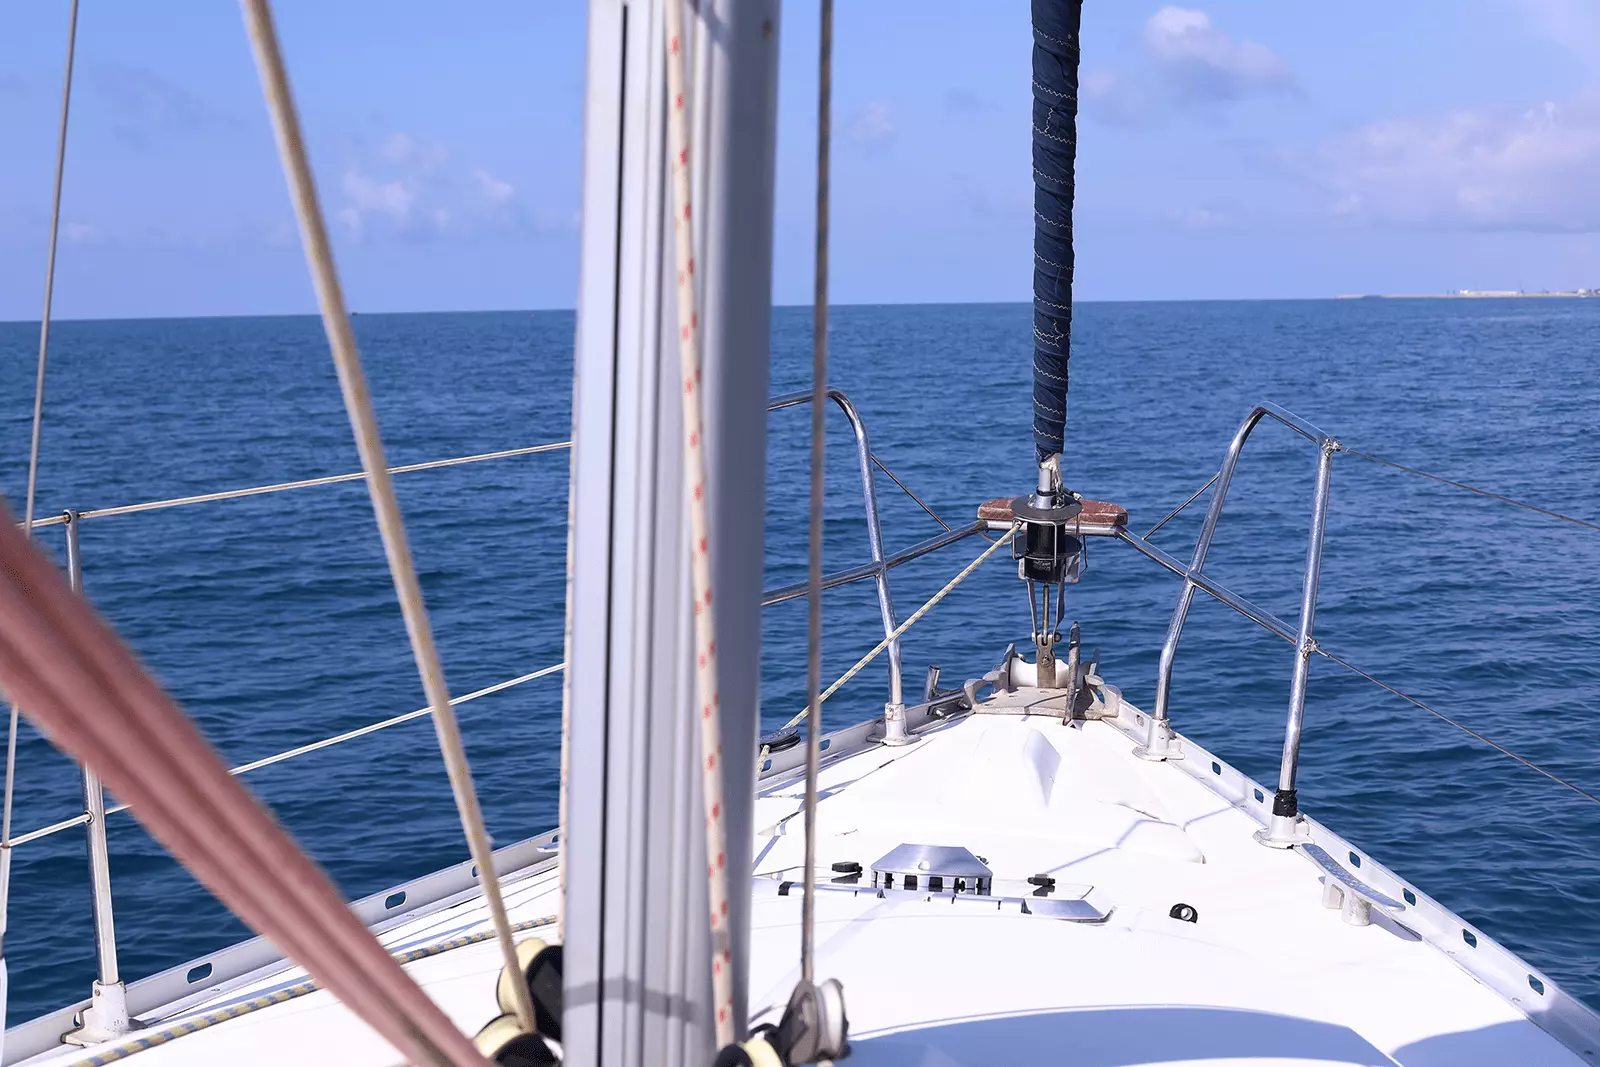 Explora los tesoros desde el barco: Lo que podrás ver en una salida en velero desde Sitges